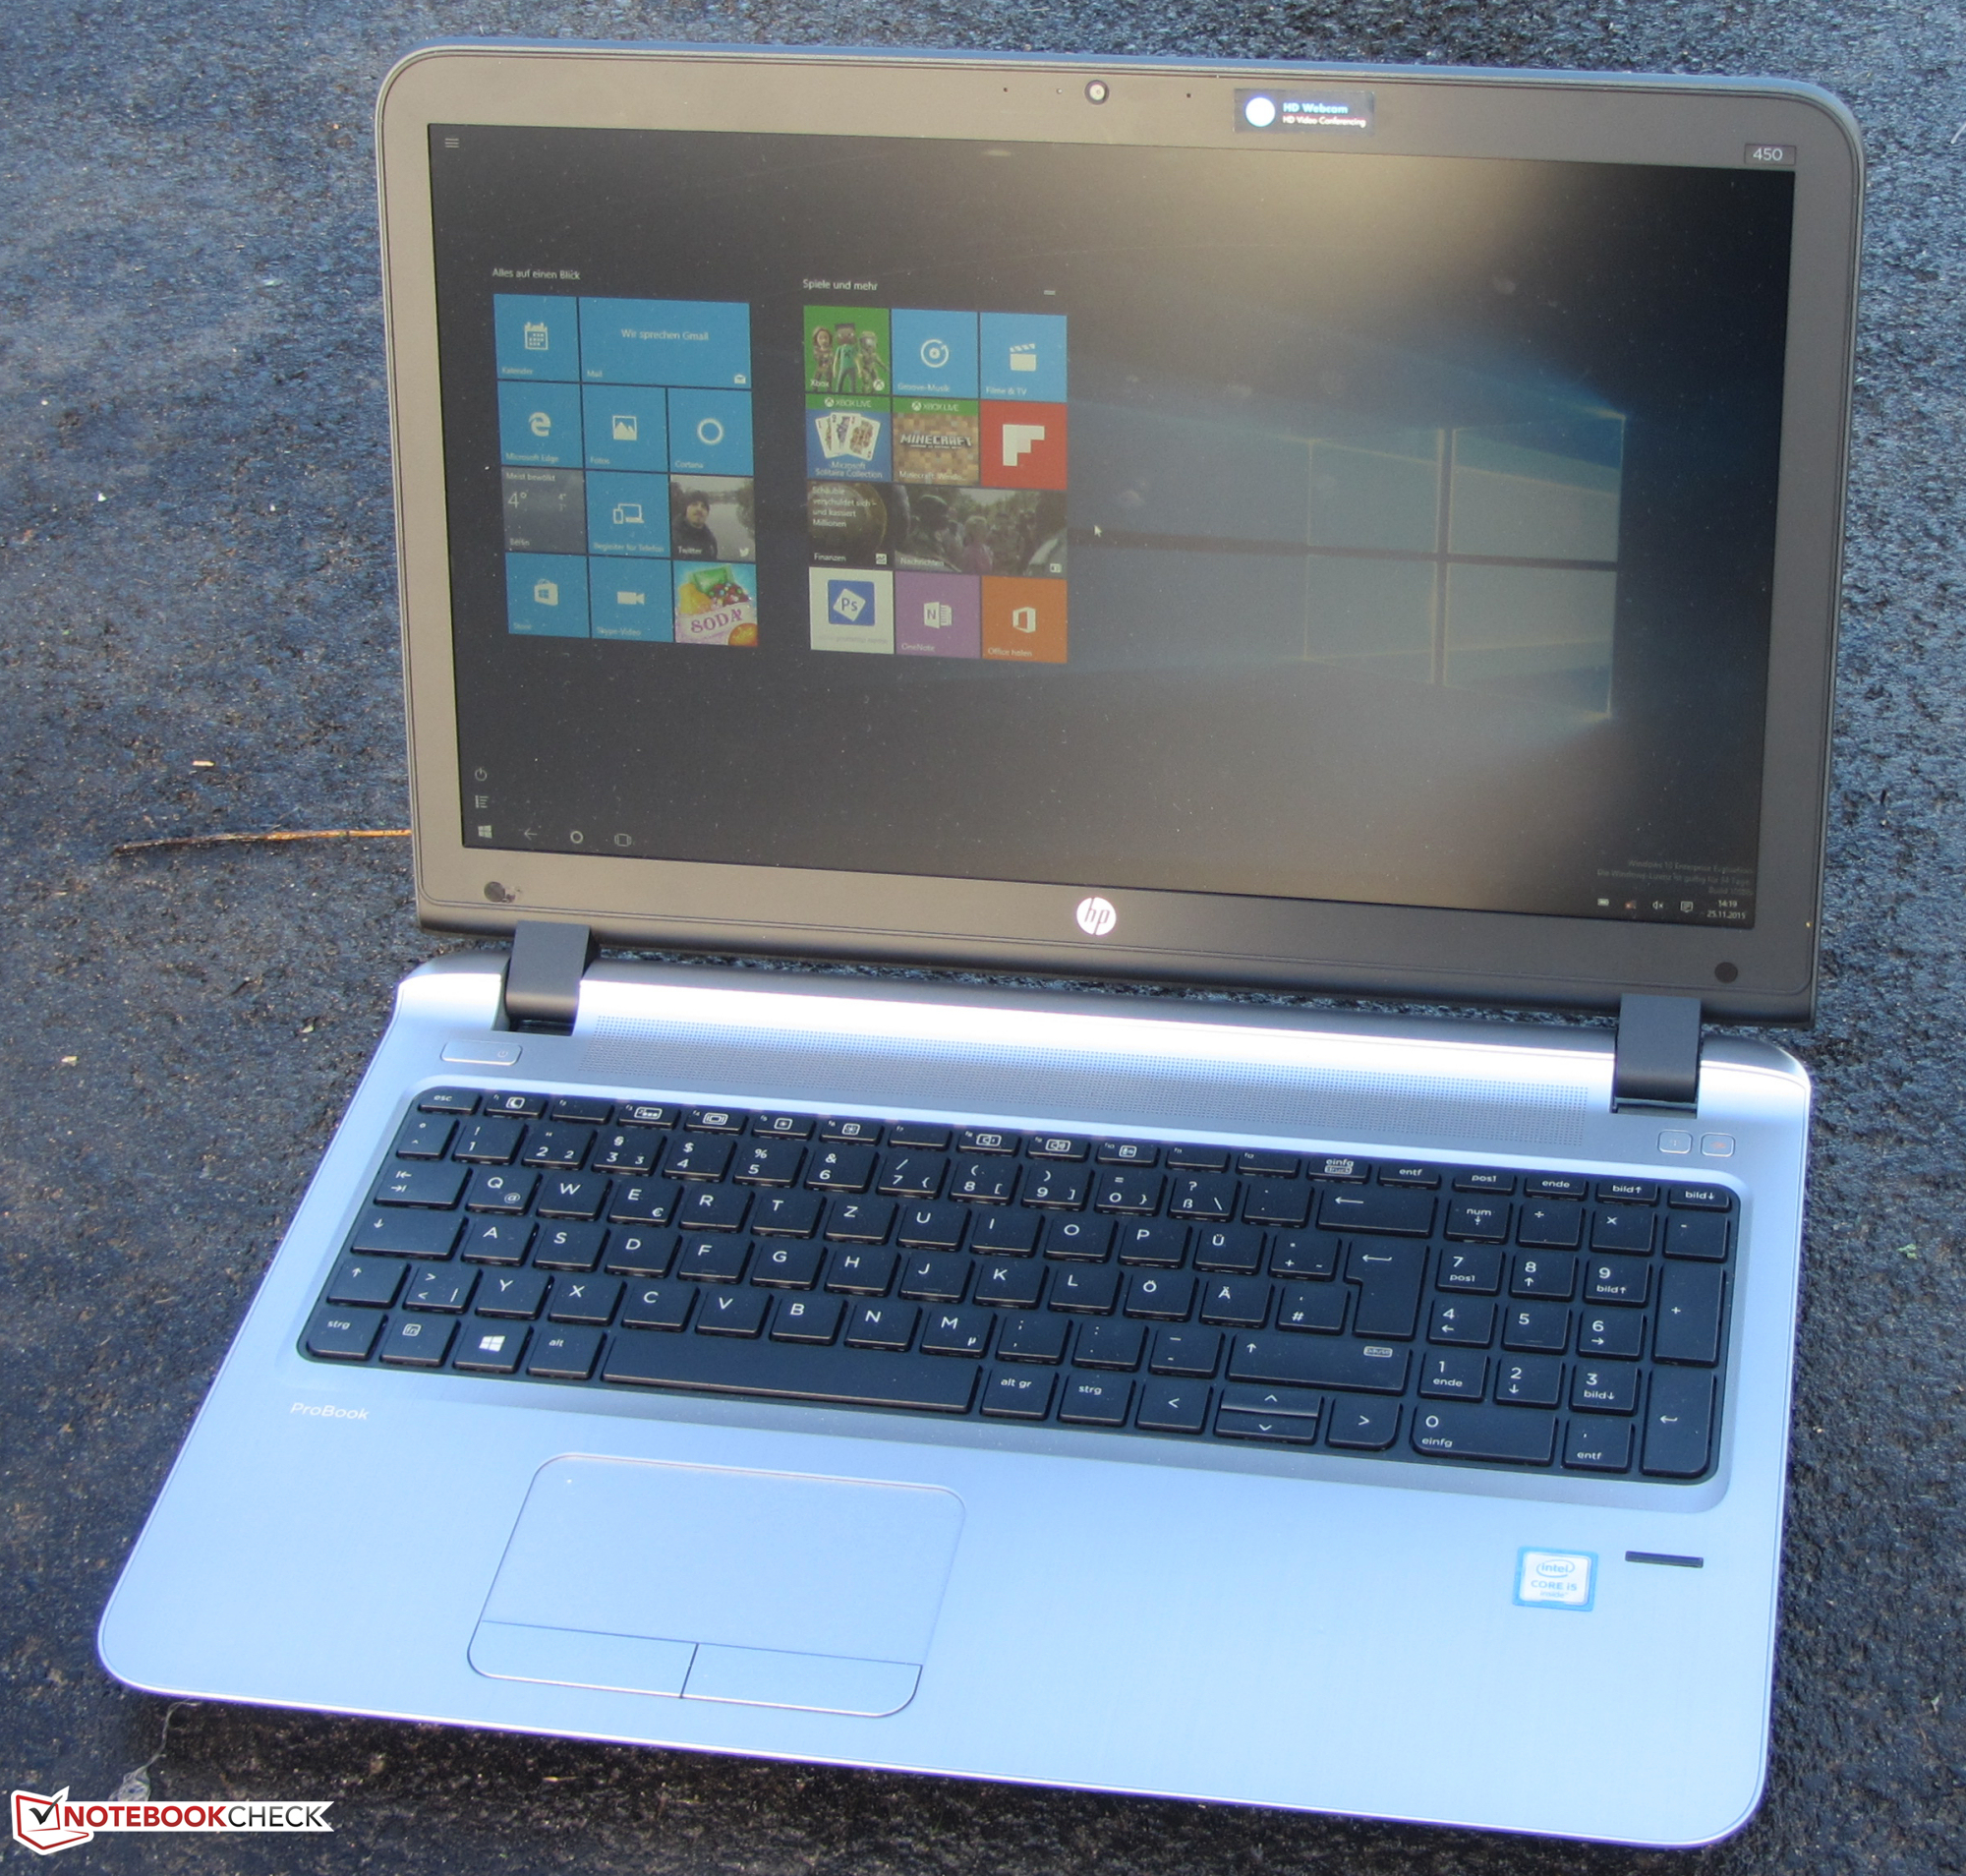 【Core i7搭載】【WEBカメラ付き テレワークOK】 HP ProBook 450 G3 Notebook PC 第6世代 Core i7 6500U 8GB 新品SSD480GB スーパーマルチ Windows10 64bit WPSOffice 15.6インチ フルHD カメラ 無線LAN パソコン ノートパソコン PC Notebook